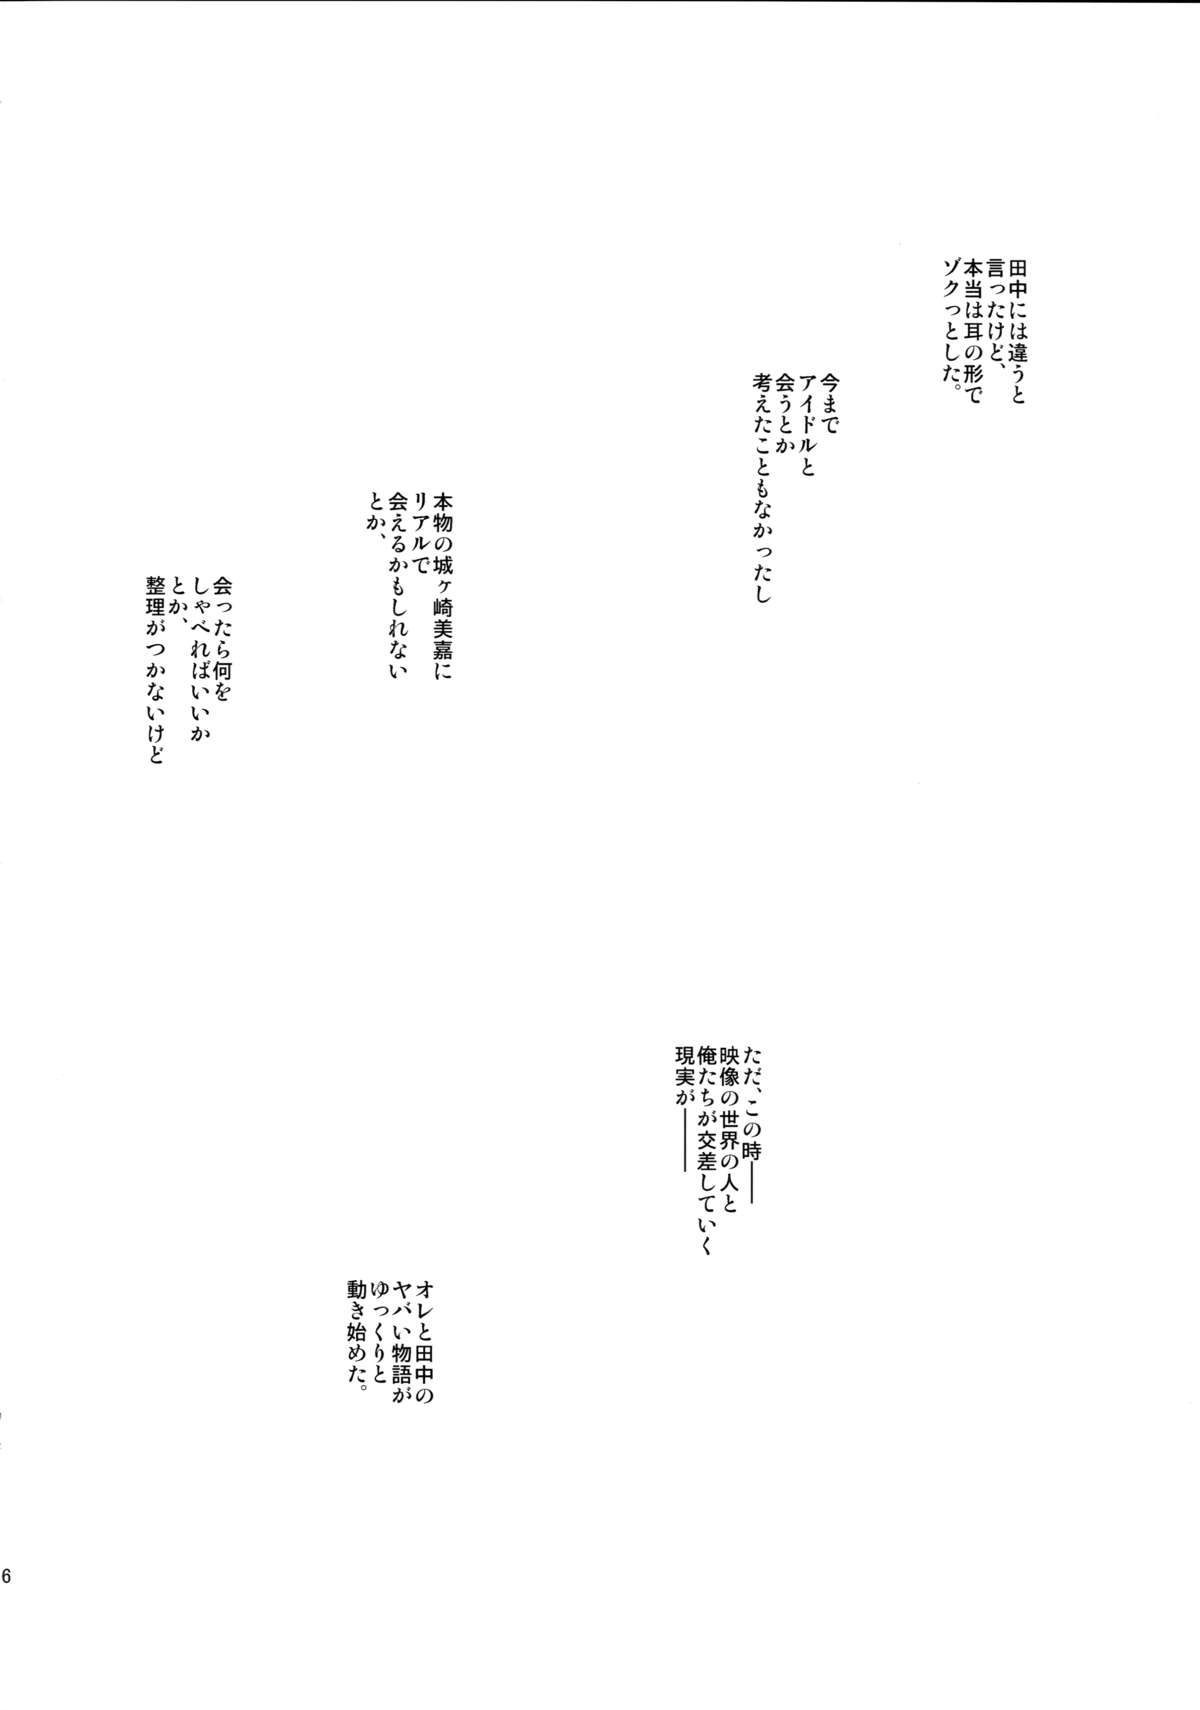 [カウンタック (古事記王子)] アイドル姉妹みかりか (アイドルマスター シンデレラガールズ) [2015年3月25日]